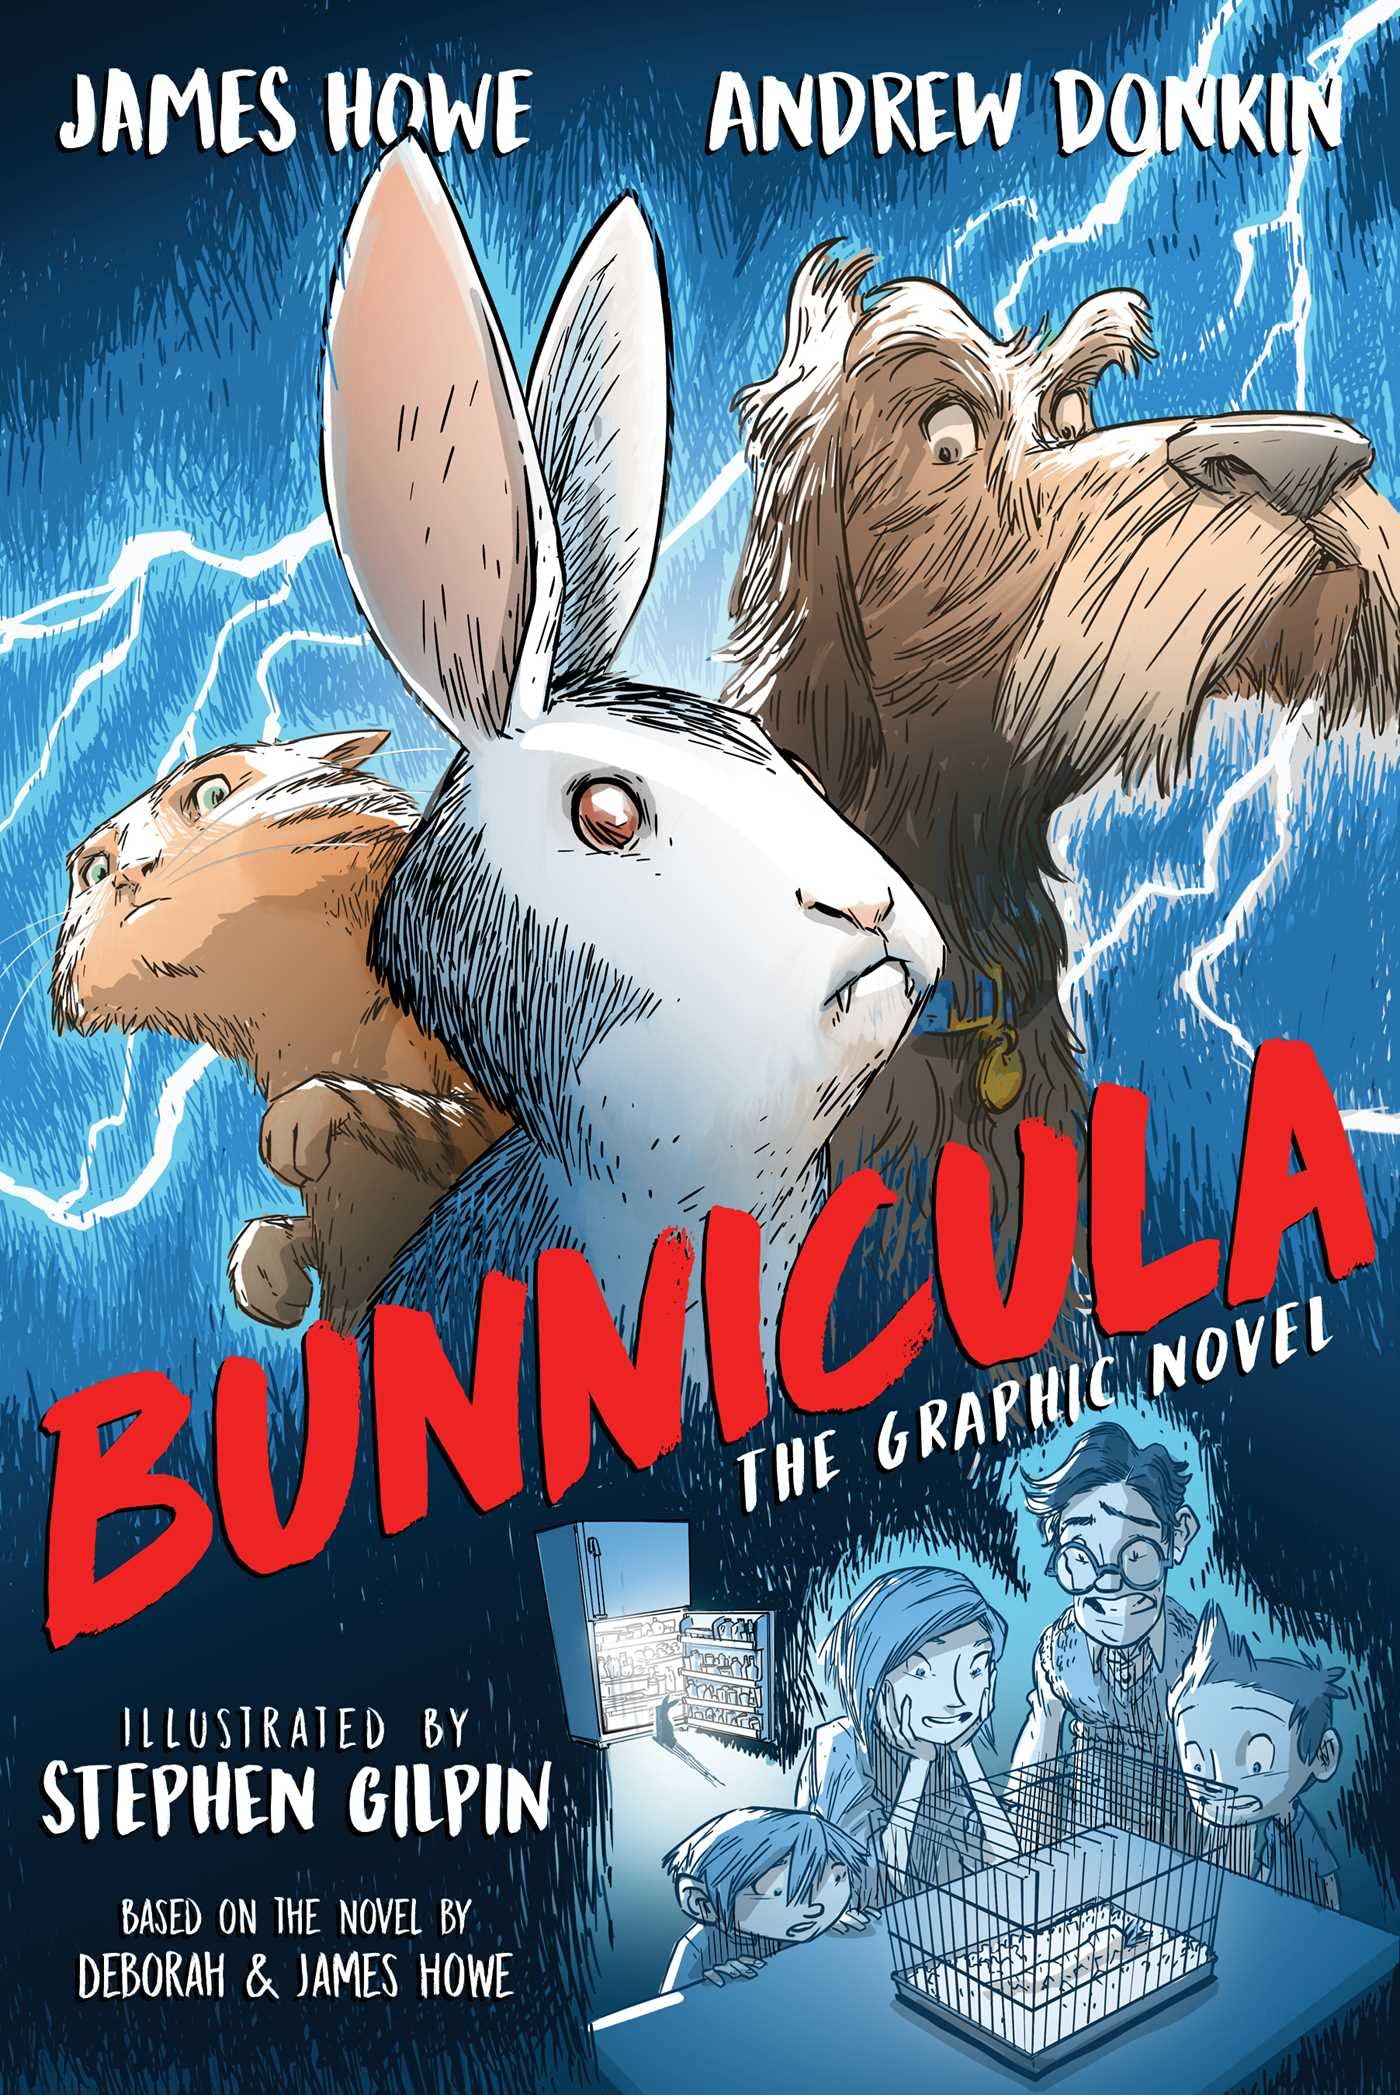 Bunnicula | This Week’s Comics